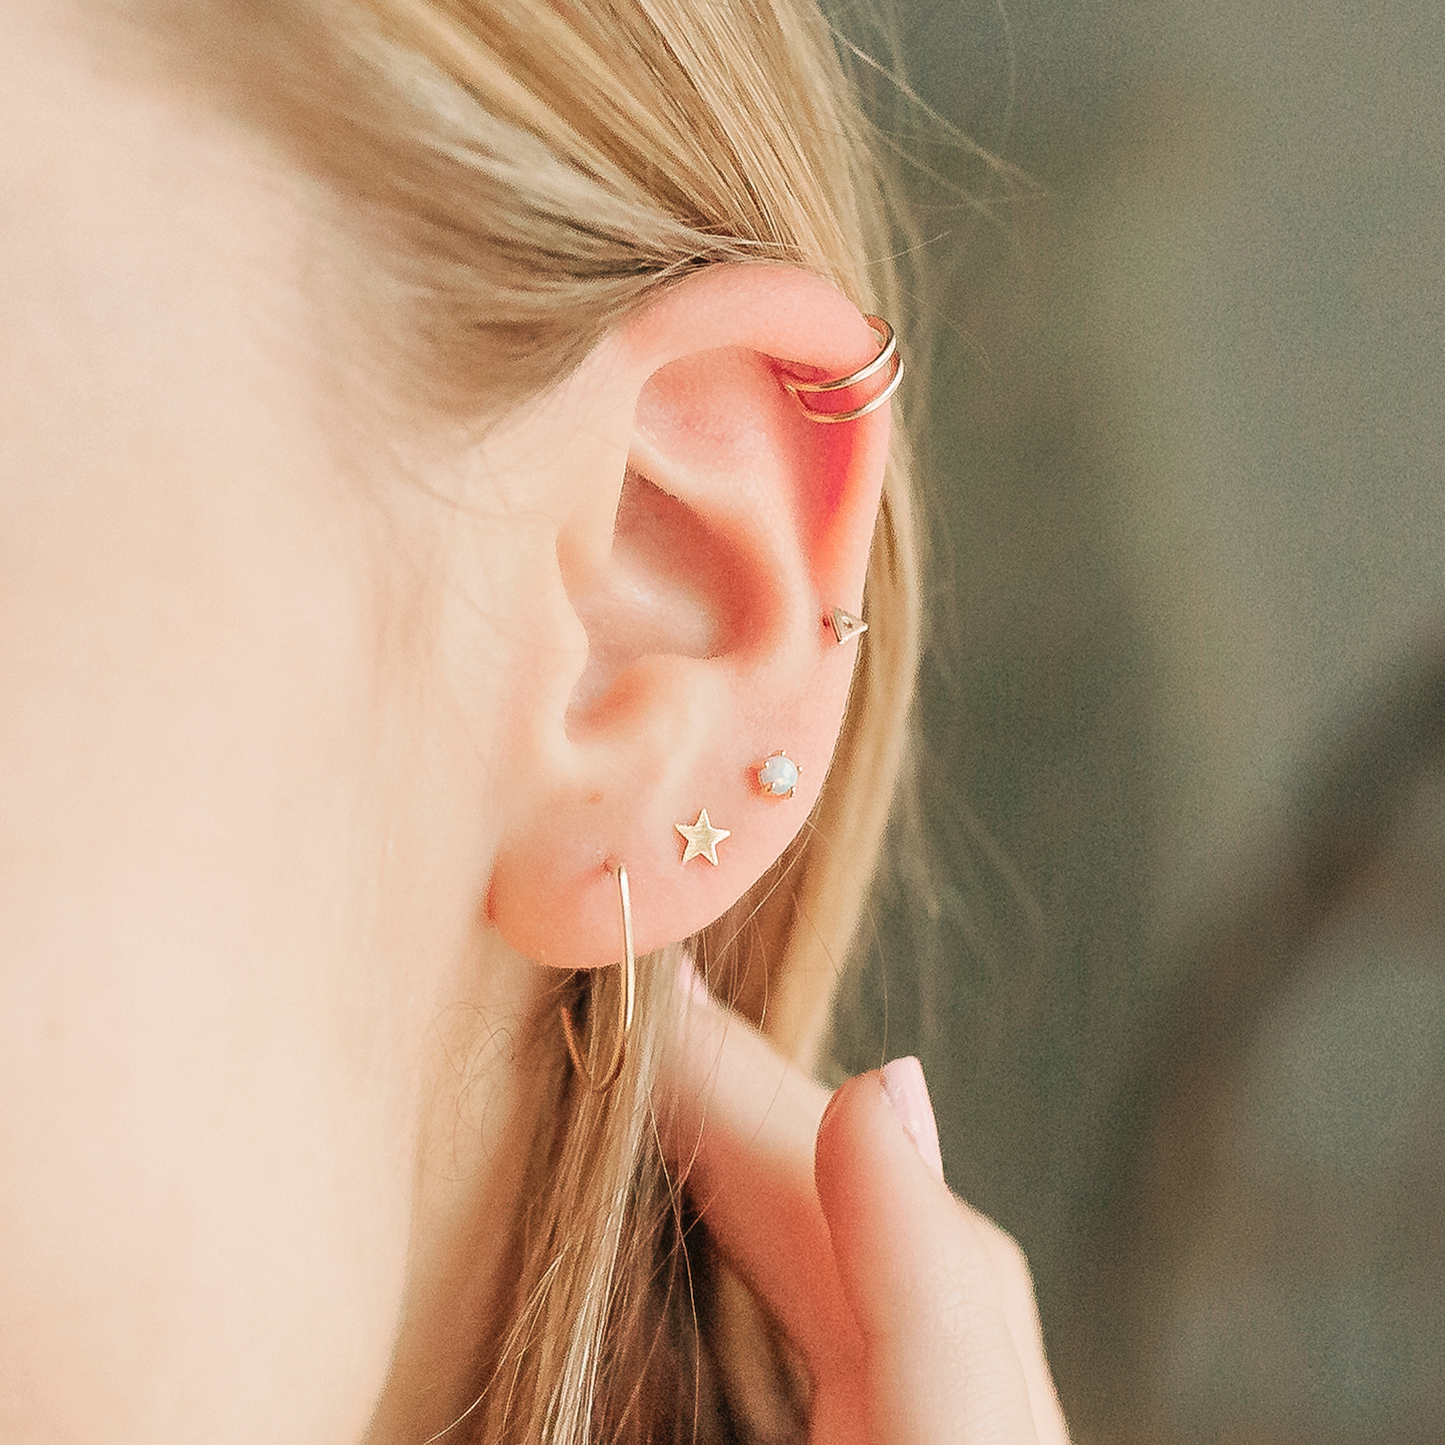 Ear Piercing Party